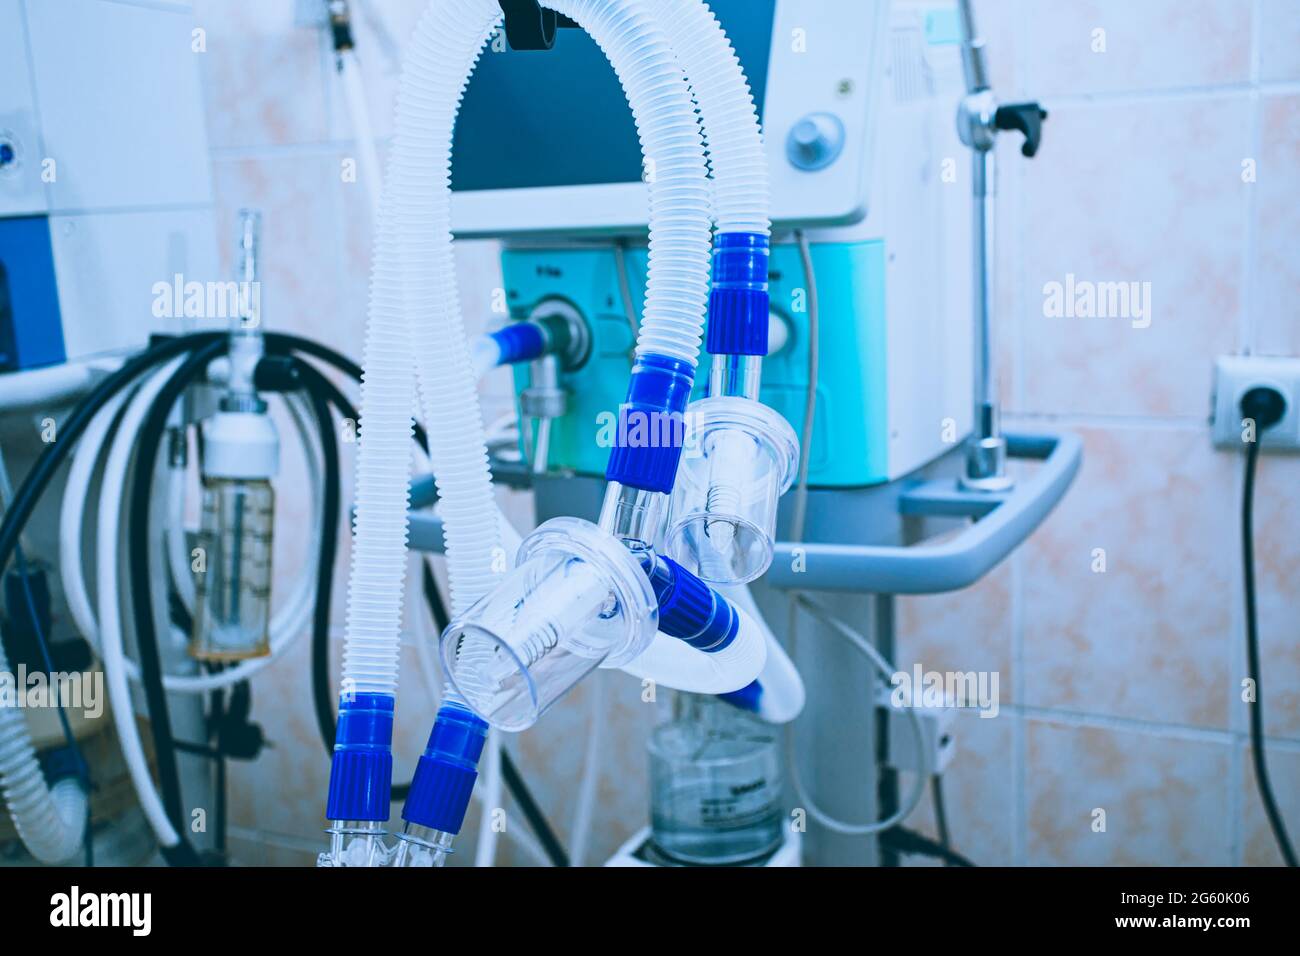 Composants de dispositifs médicaux pour la ventilation des poumons dans l'hôpital Banque D'Images